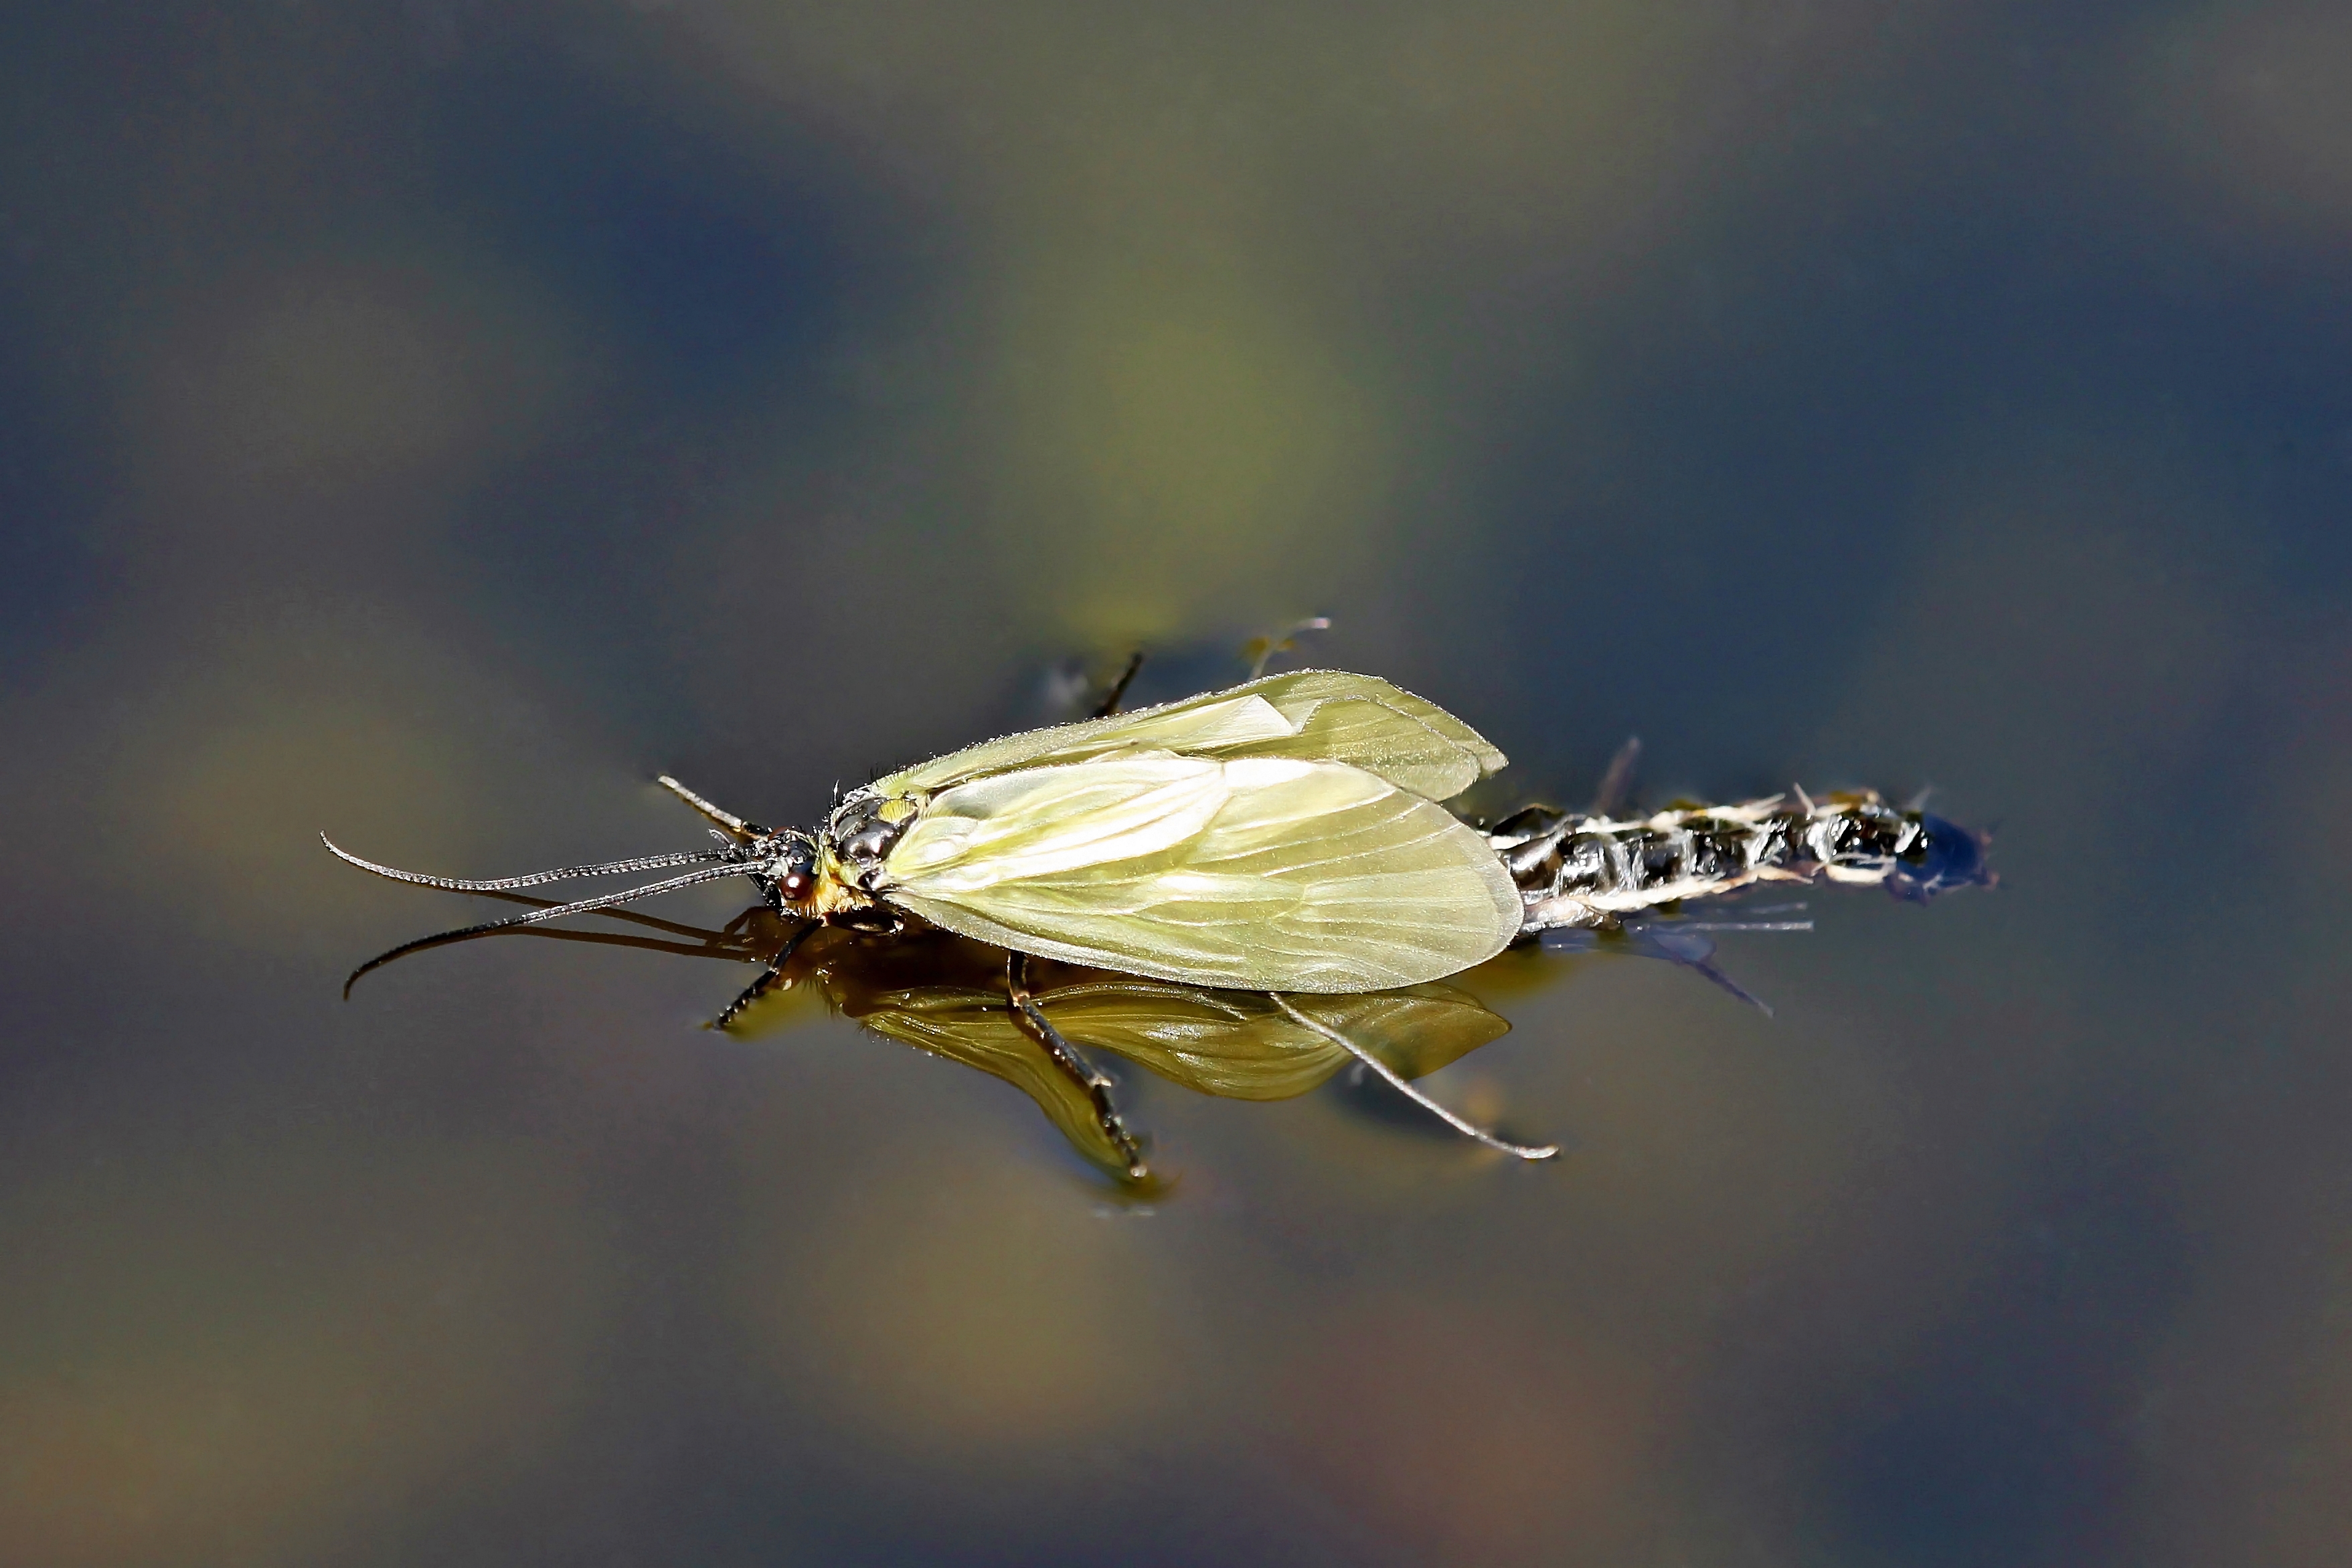 Eine Aufnahme der Köcherfliegenart Oligotricha striata kurz nach dem Schlupf, zu erkennen an den gelben Flügeln